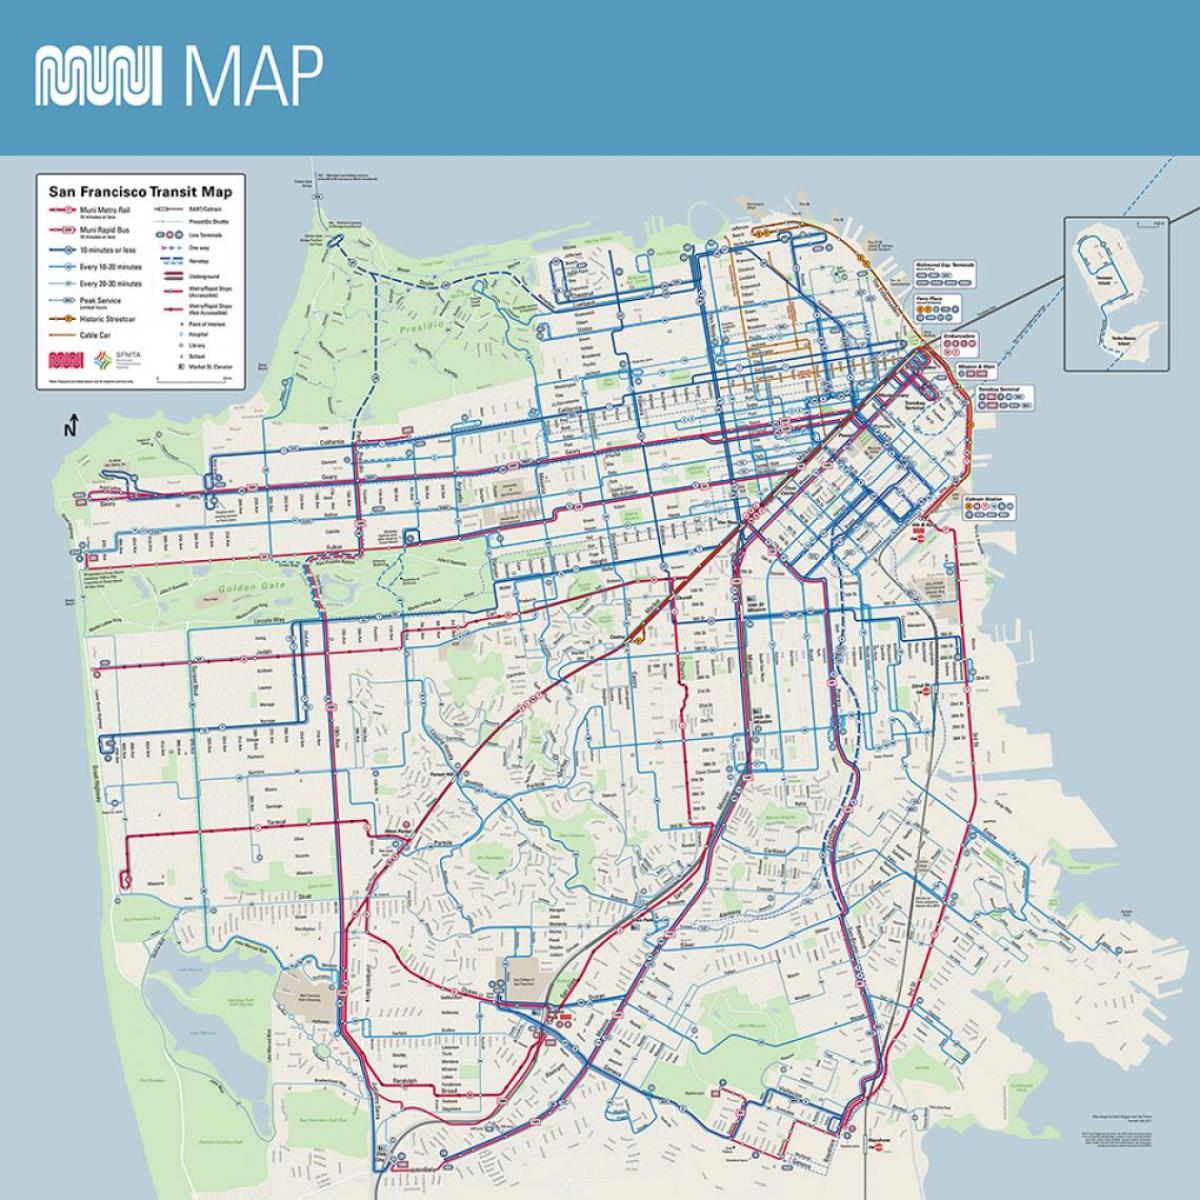 SF muni замын газрын зураг нь